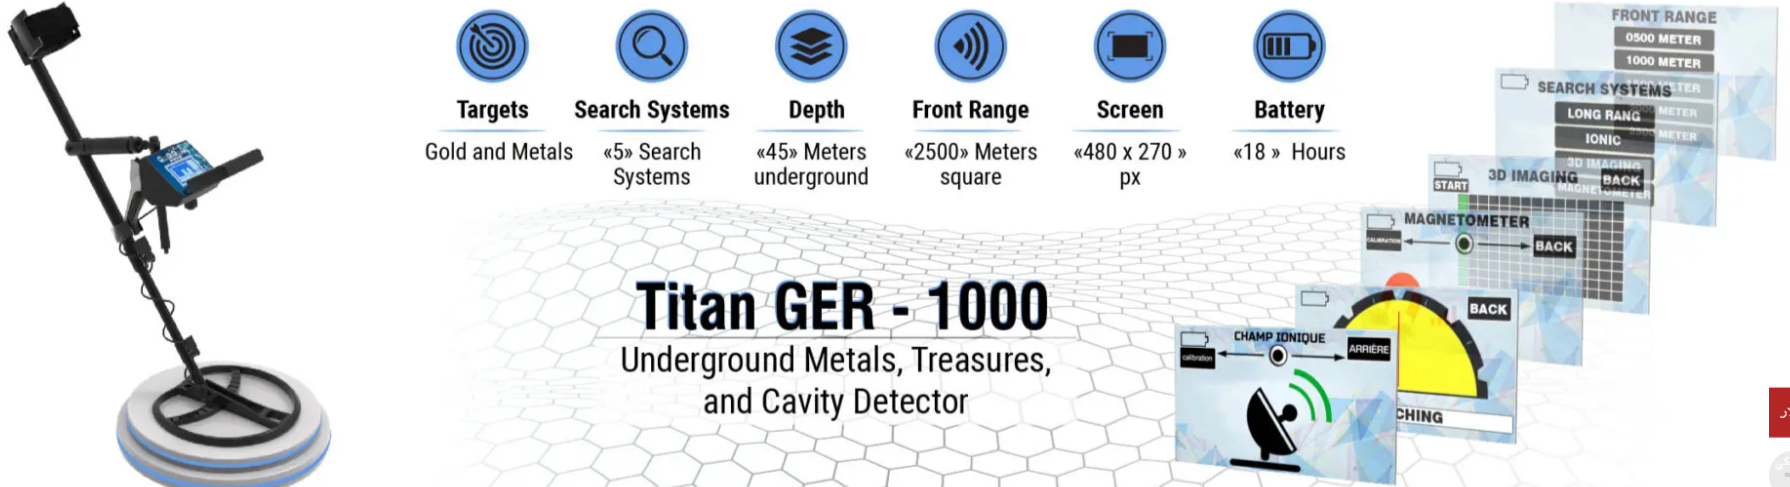 جهاز الذهب تيتان 1000 do.php?img=3117